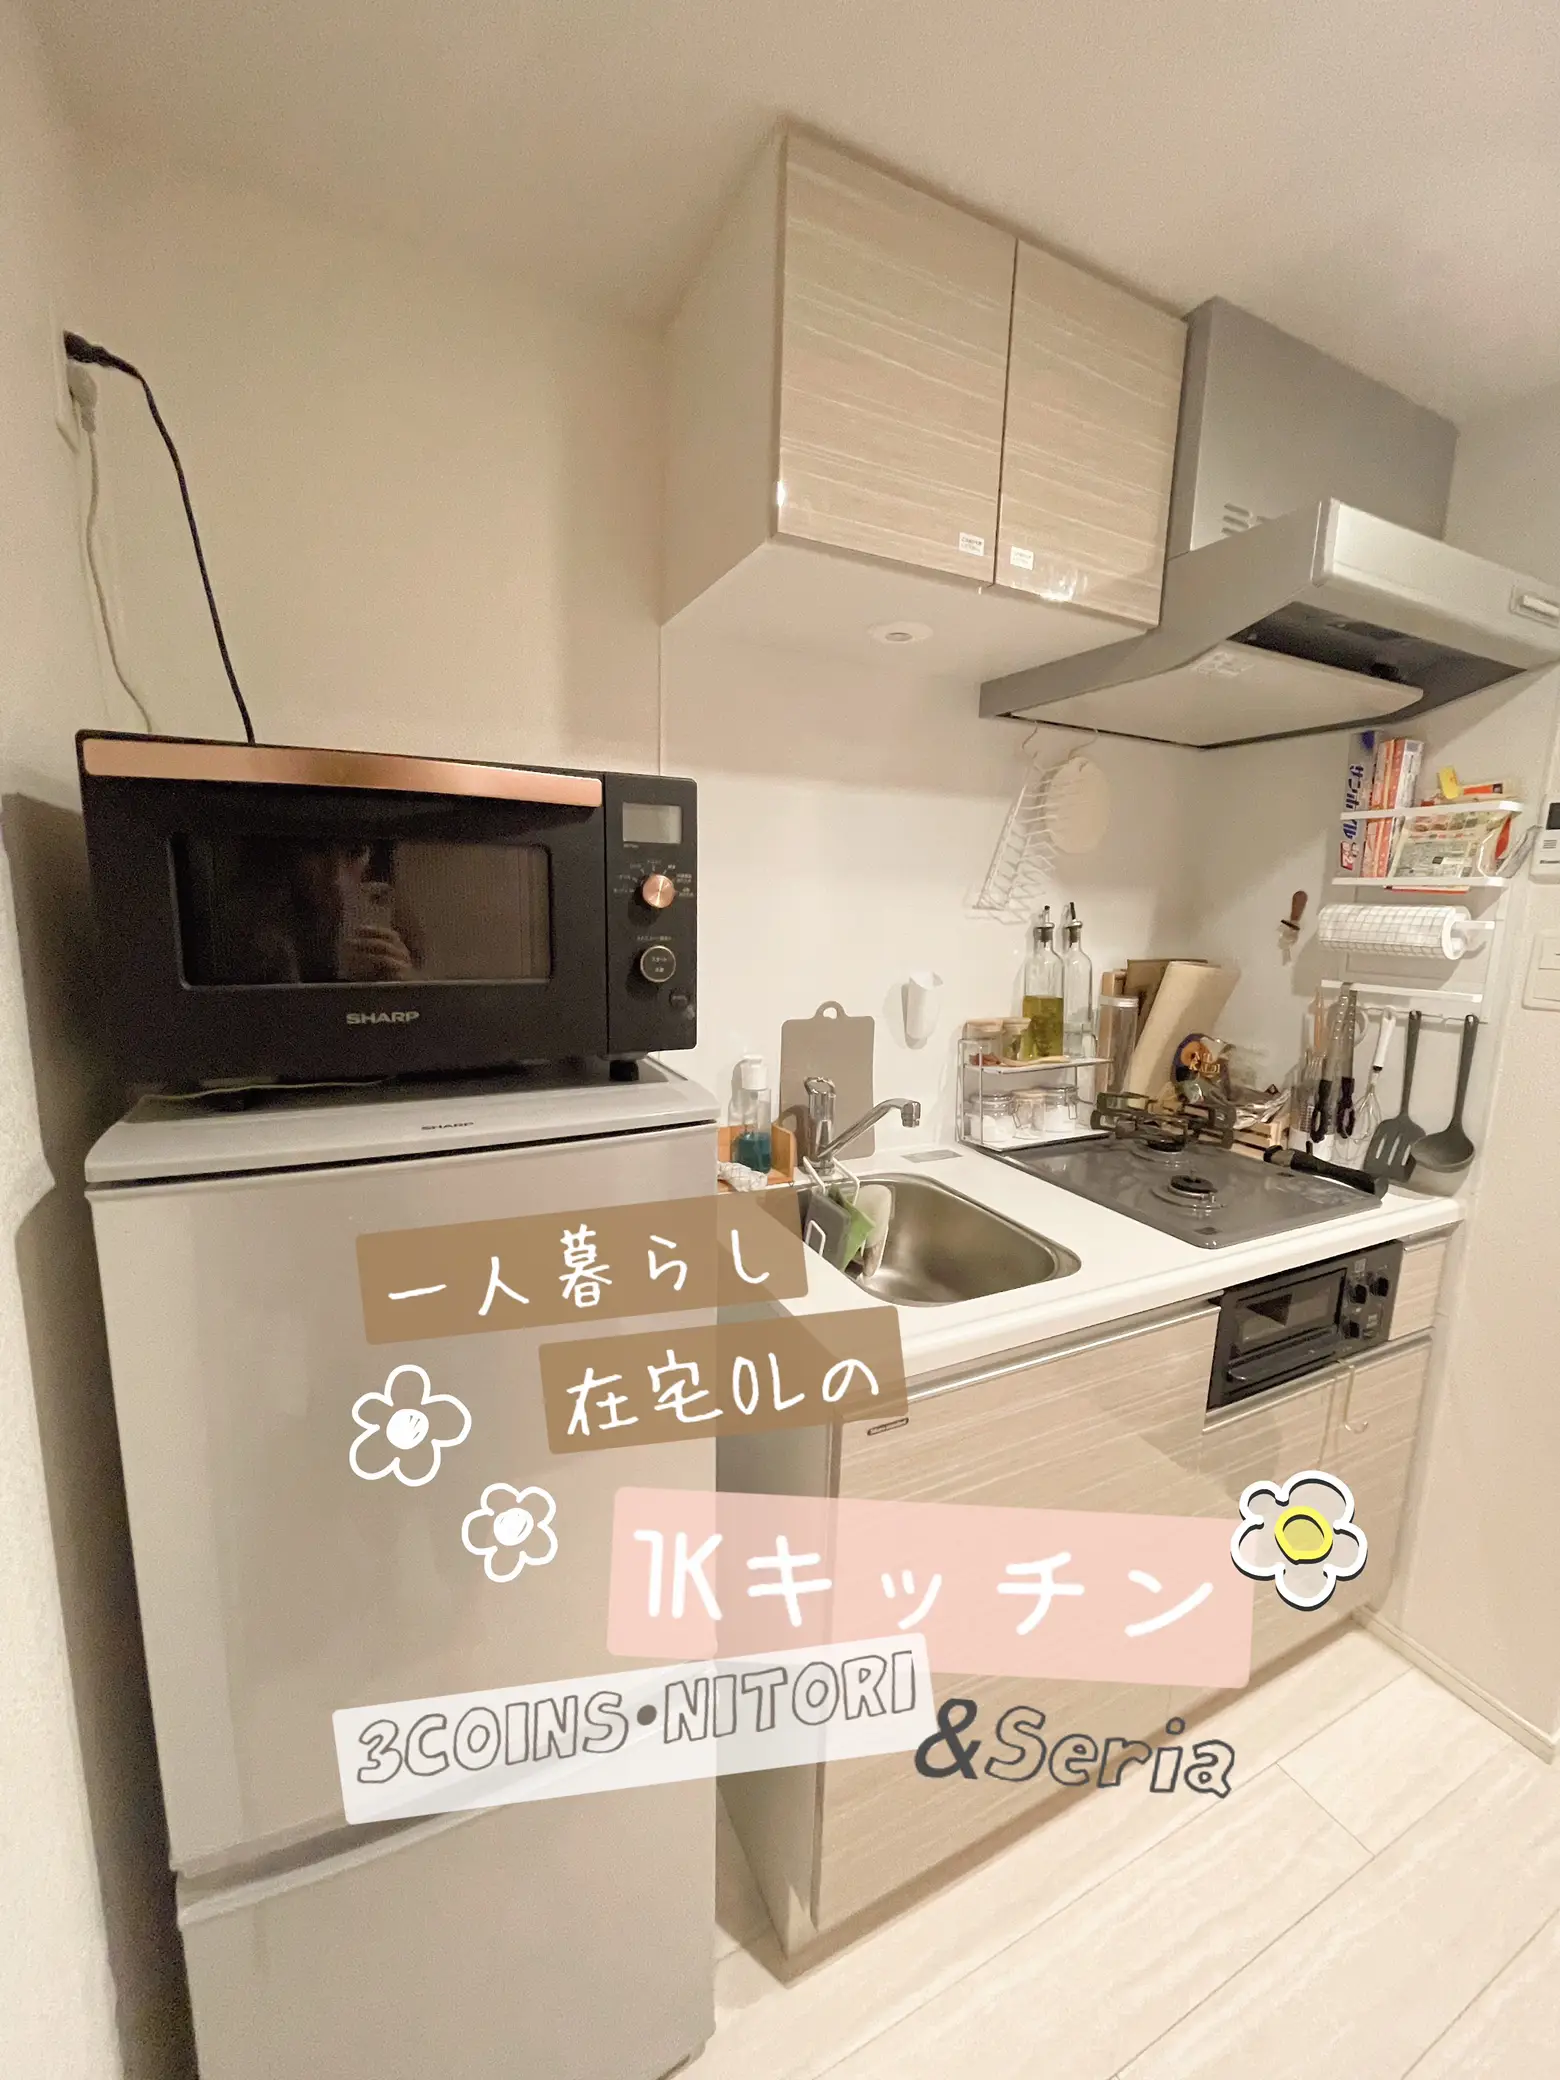 【一人暮らし】3COINS•ニトリ•Seriaで購入したお気に入りキッチンアイテム♡の画像 (1枚目)